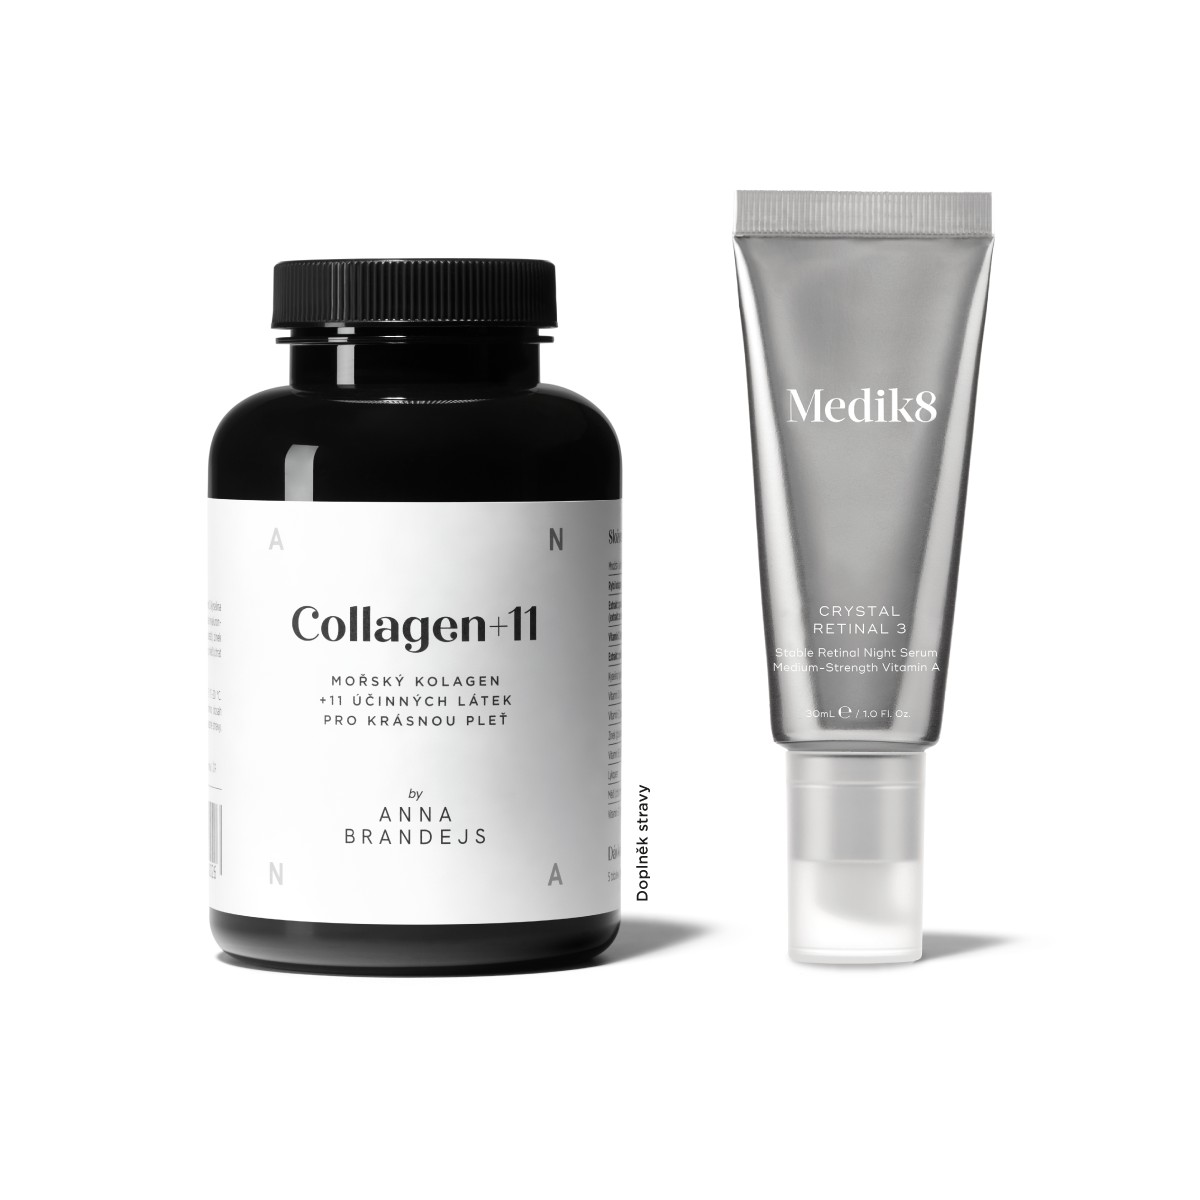 Collagen+11 ANNA BRANDEJS & Crystal Retinal 6